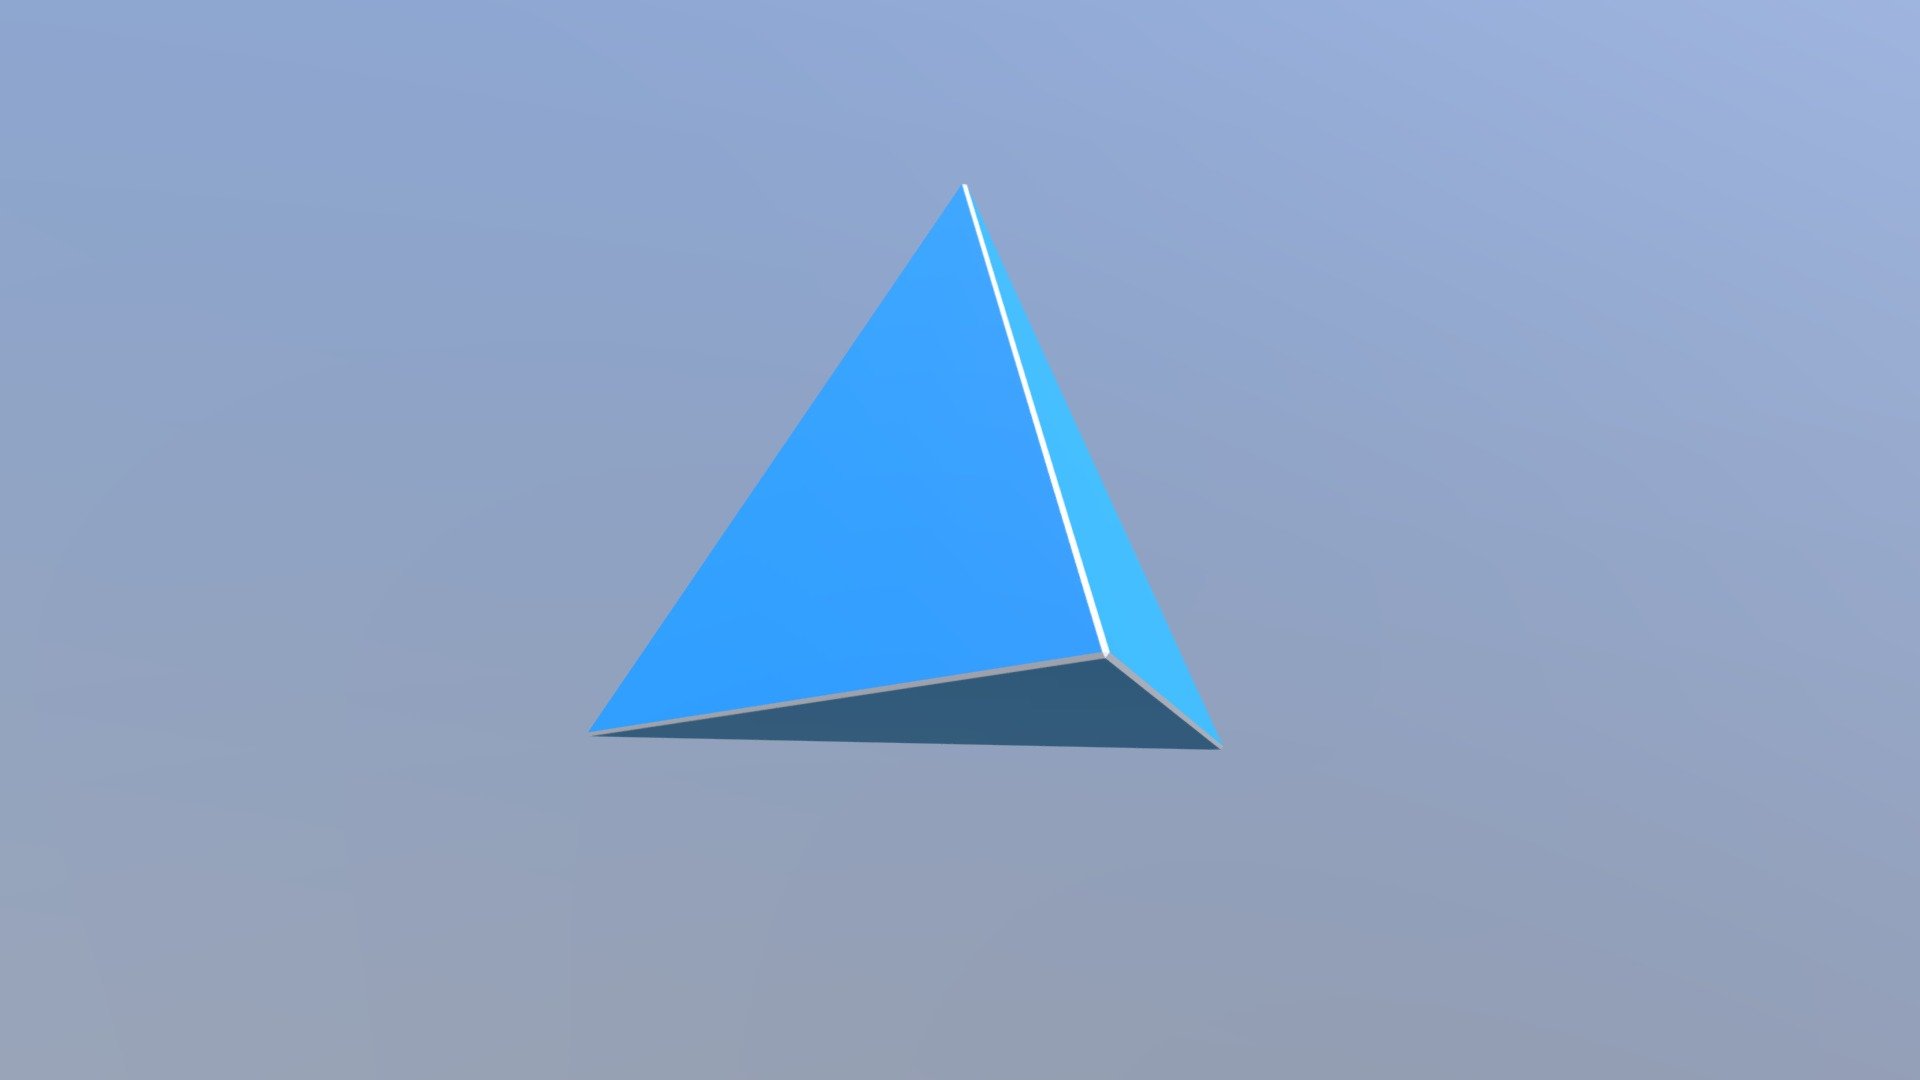 A Triangular Pyramid